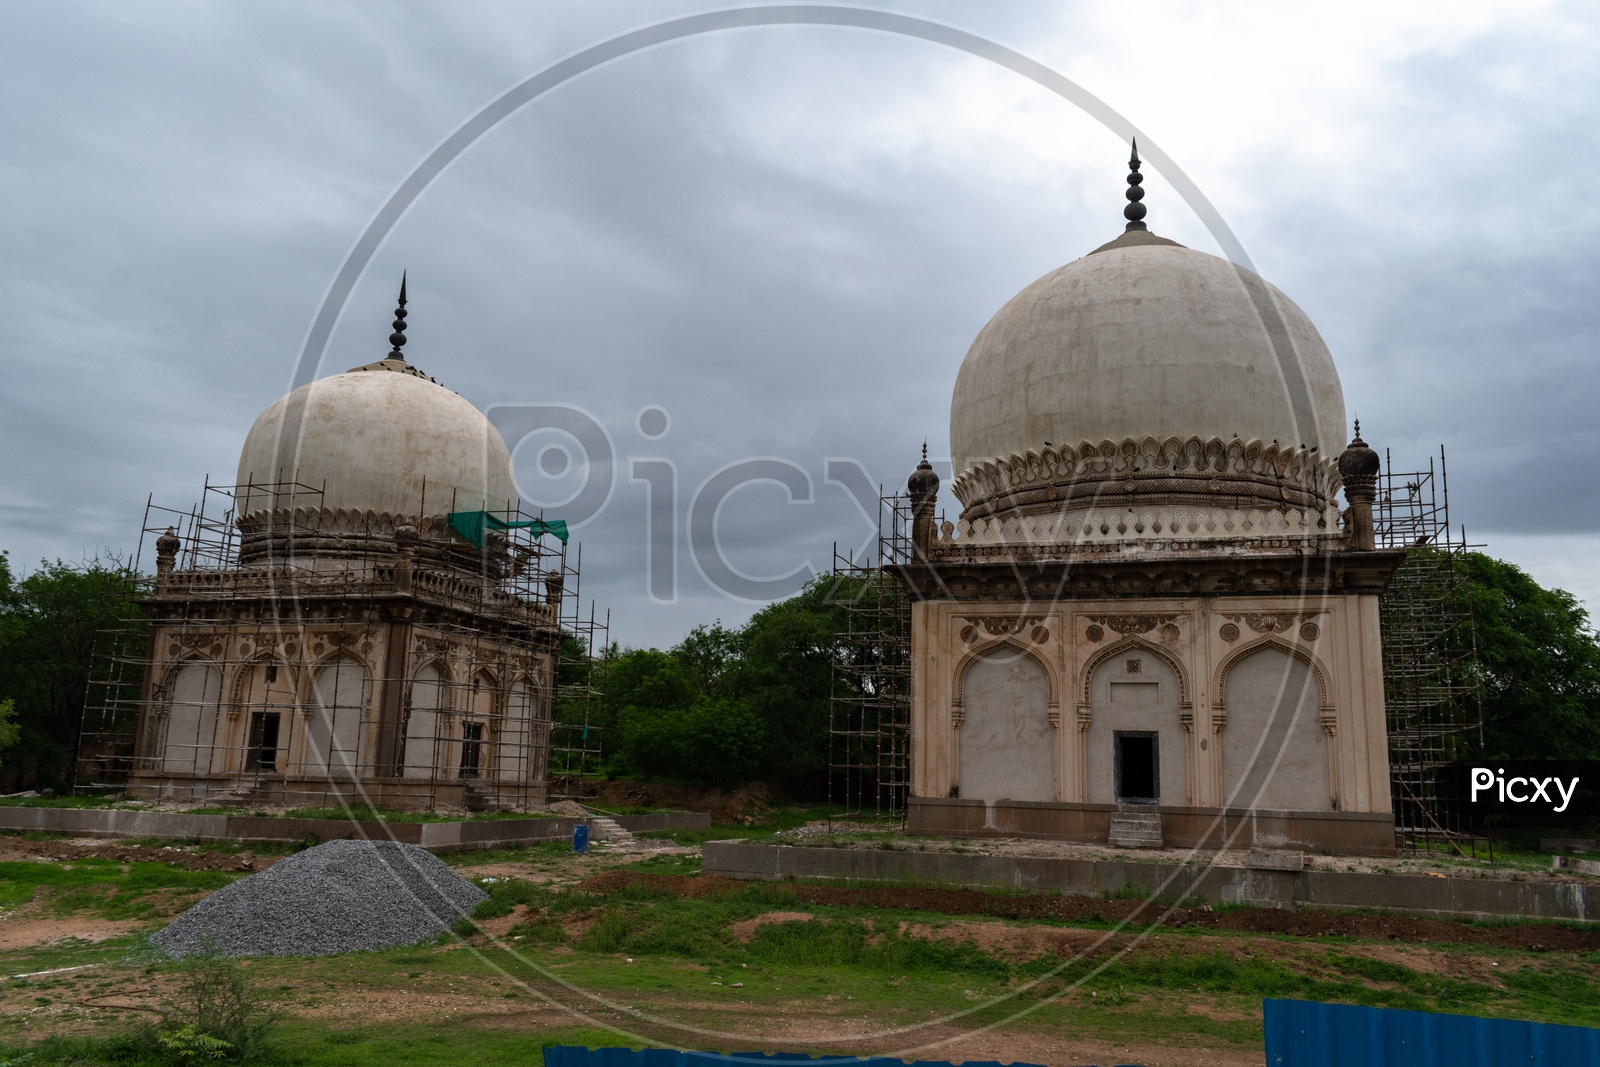 Renovation works at Qutb Shahi Tombs, Hyderabad.